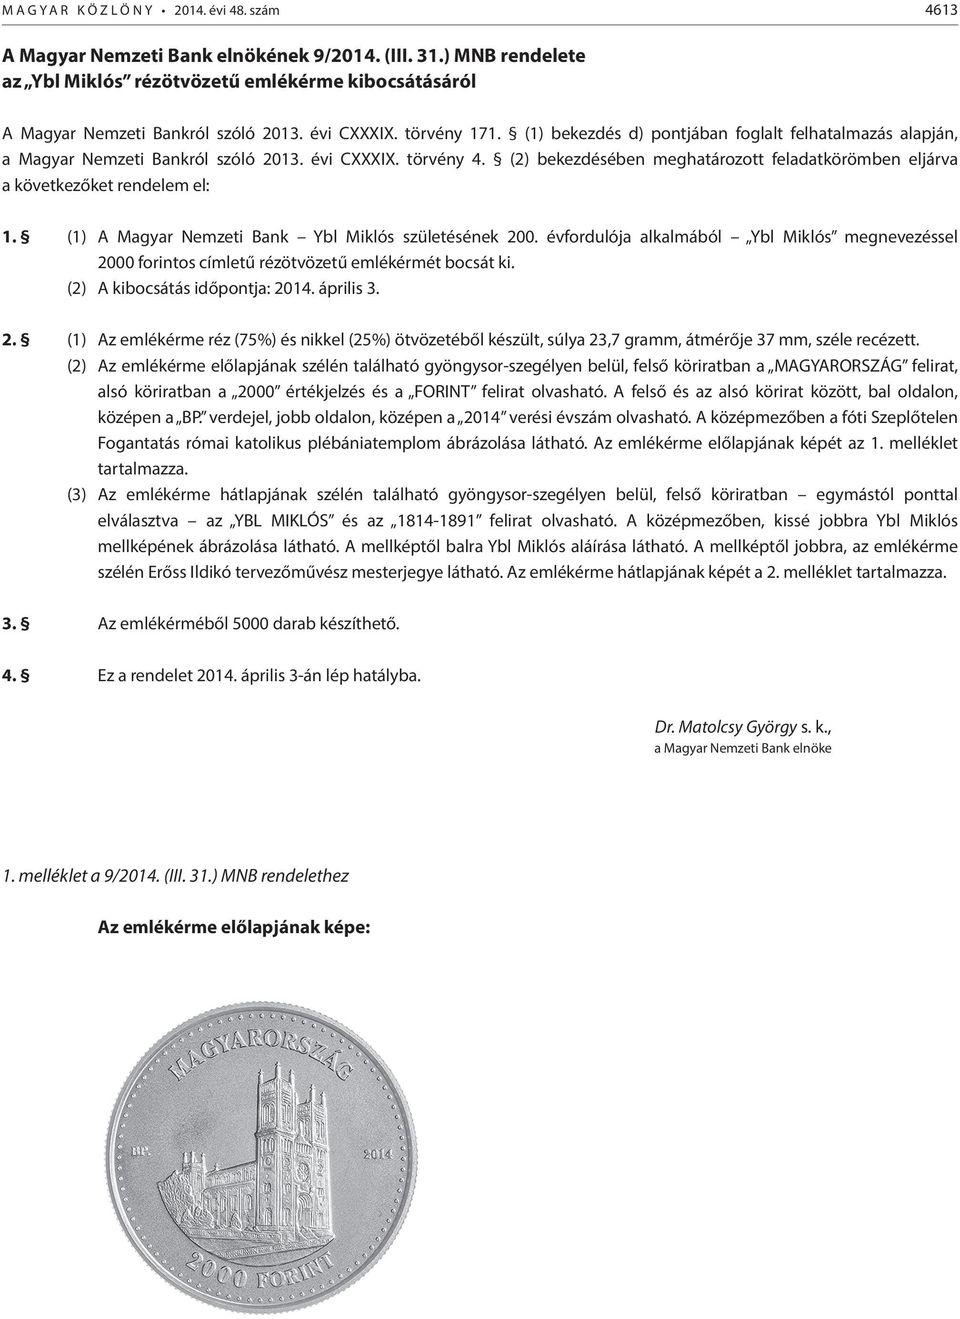 (1) bekezdés d) pontjában foglalt felhatalmazás alapján, a Magyar Nemzeti Bankról szóló 2013. évi CXXXIX. törvény 4.